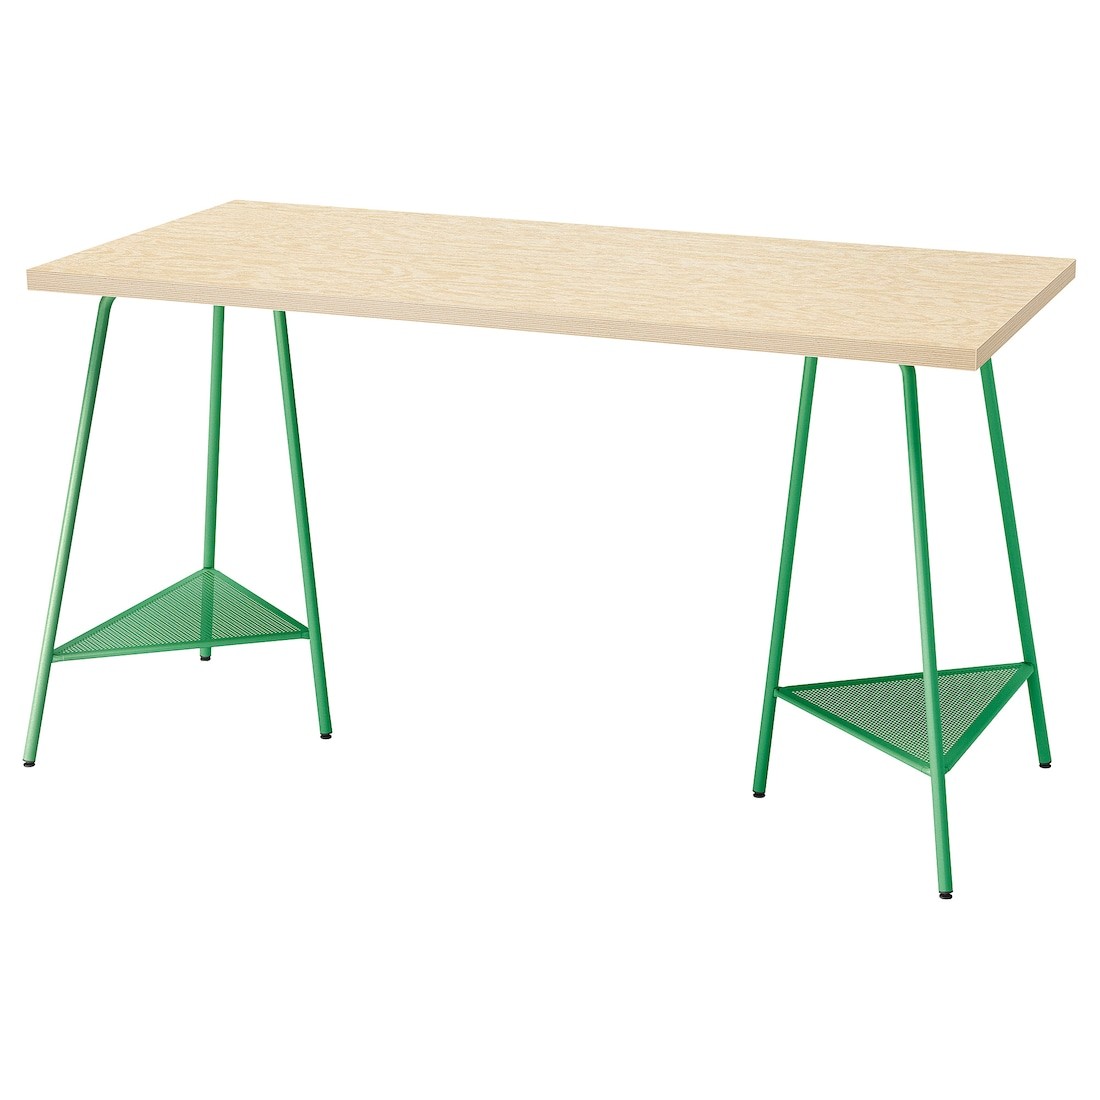 MITTCIRKEL / TILLSLAG Письменный стол, яркий сосновый/зеленый эффект, 140x60 см